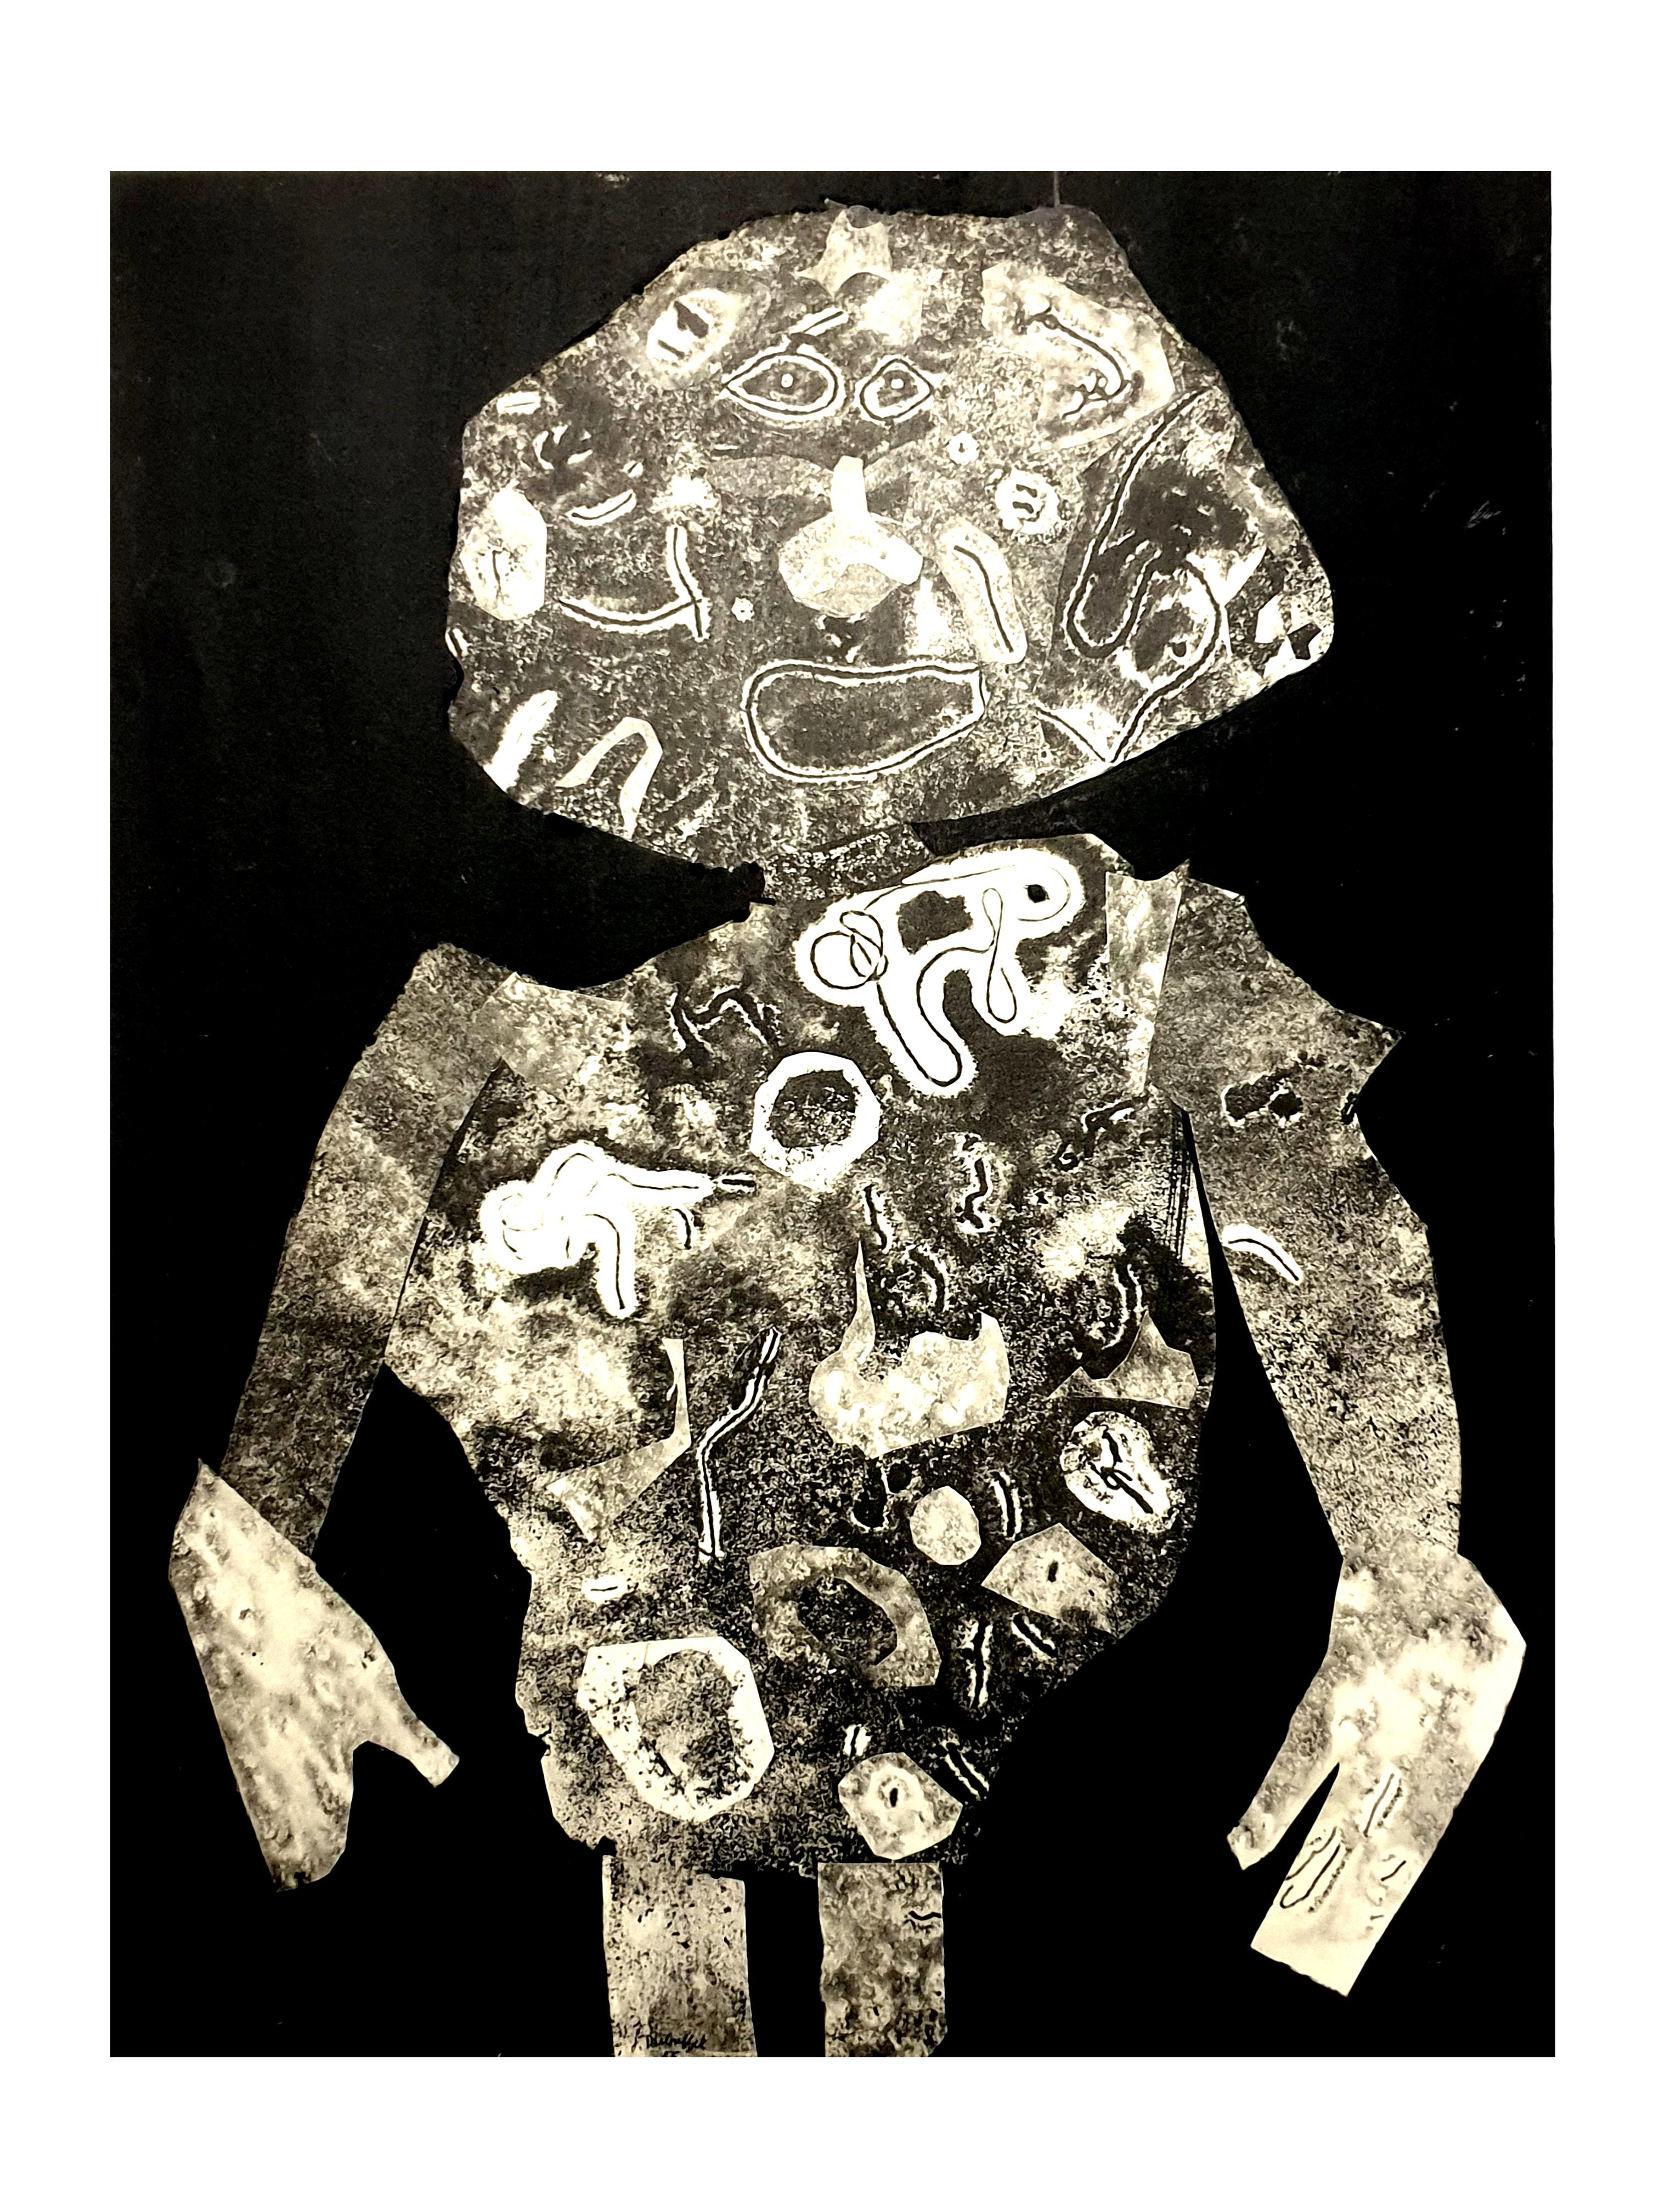 nach Jean Dubuffet - Mann - Pochoir
1956
Abmessungen: 32 x 25 cm 
Ausgabe: G. di San Lazzaro.
Aus der Kunstzeitschrift XXè siècle
Unsigniert und nicht nummeriert wie ausgestellt